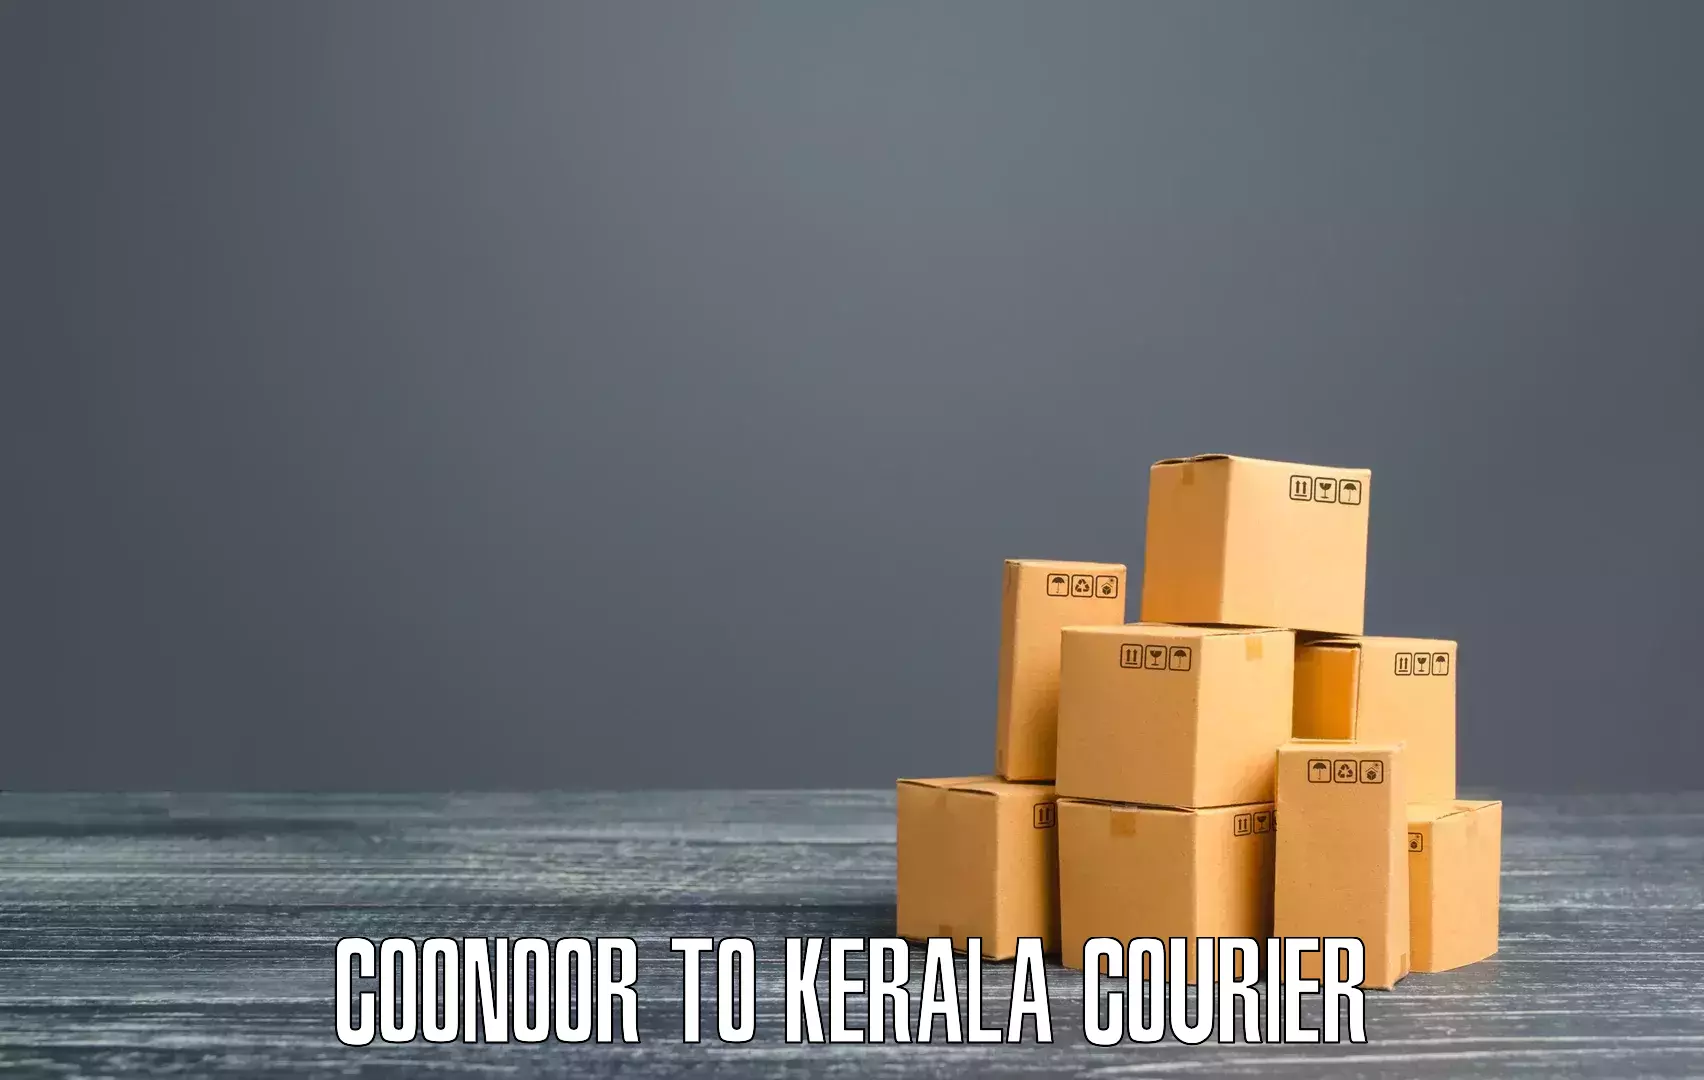 Quick booking process Coonoor to Kuttikol